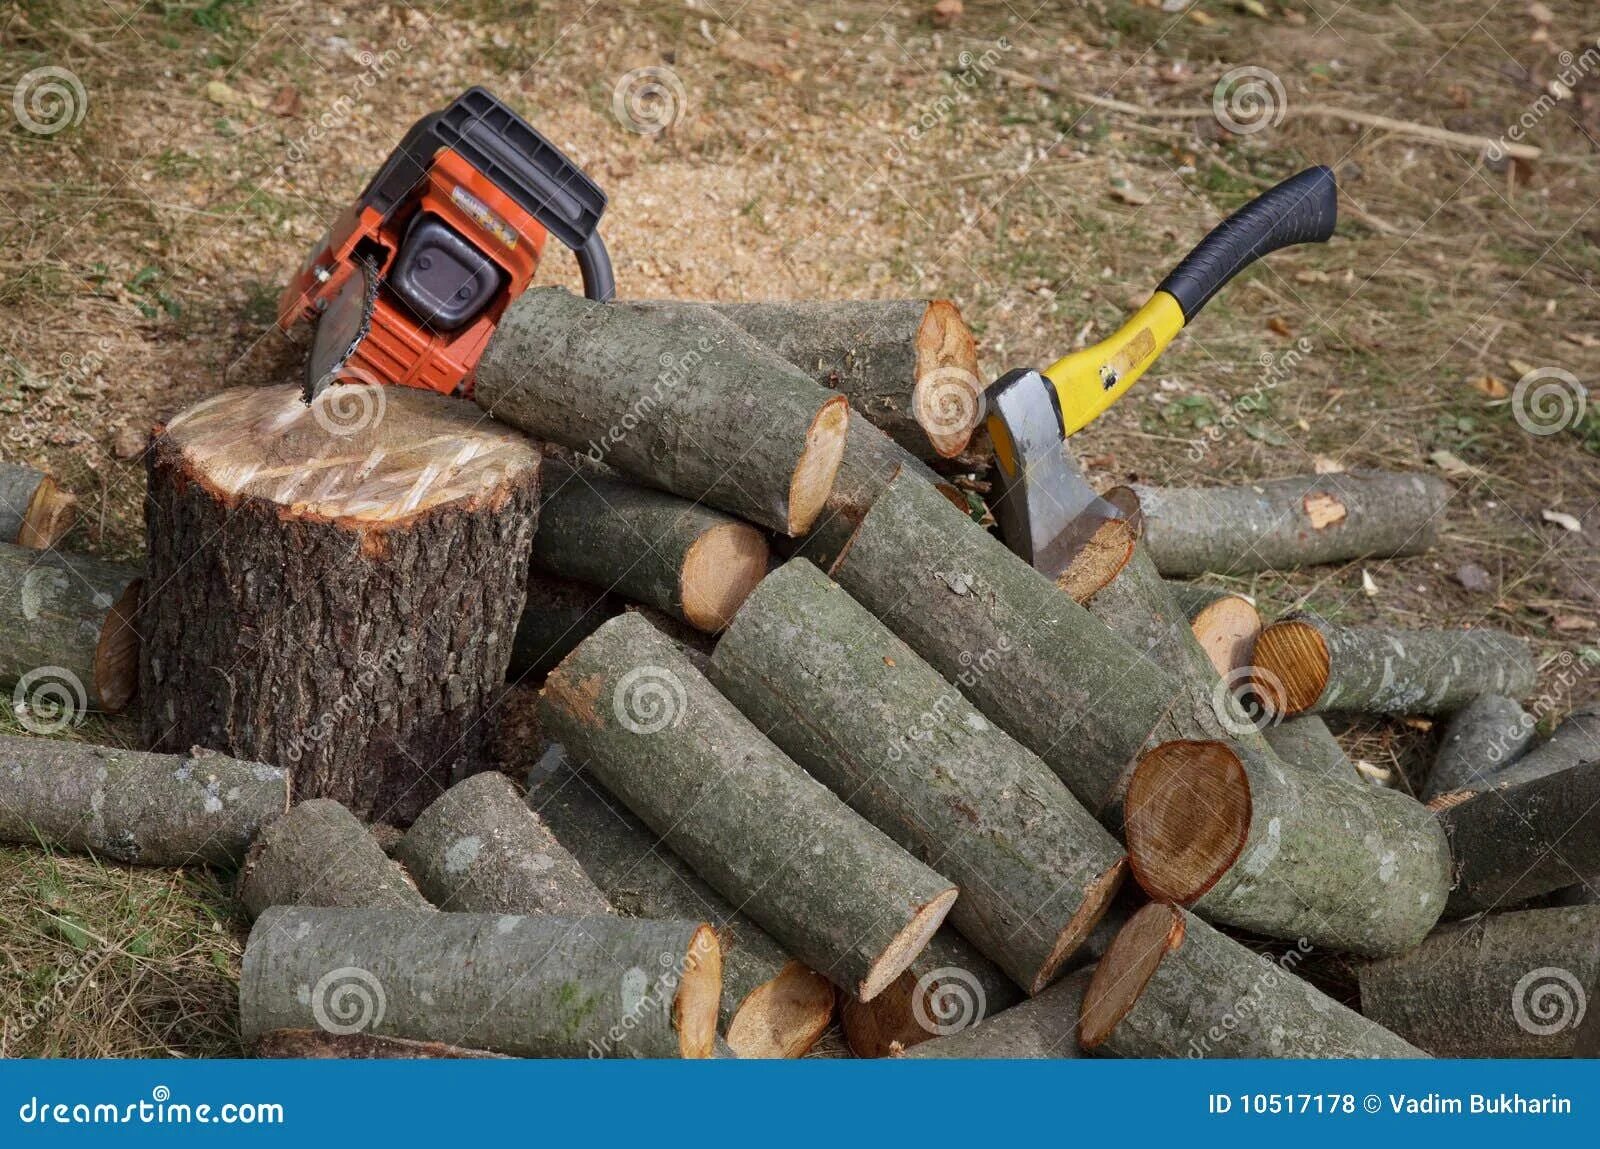 Кол щее оружие пил щий дрова. Заготовка дров. Рубка дров. Заготовка древесины для собственных нужд. Заготовка дров для собственных нужд.